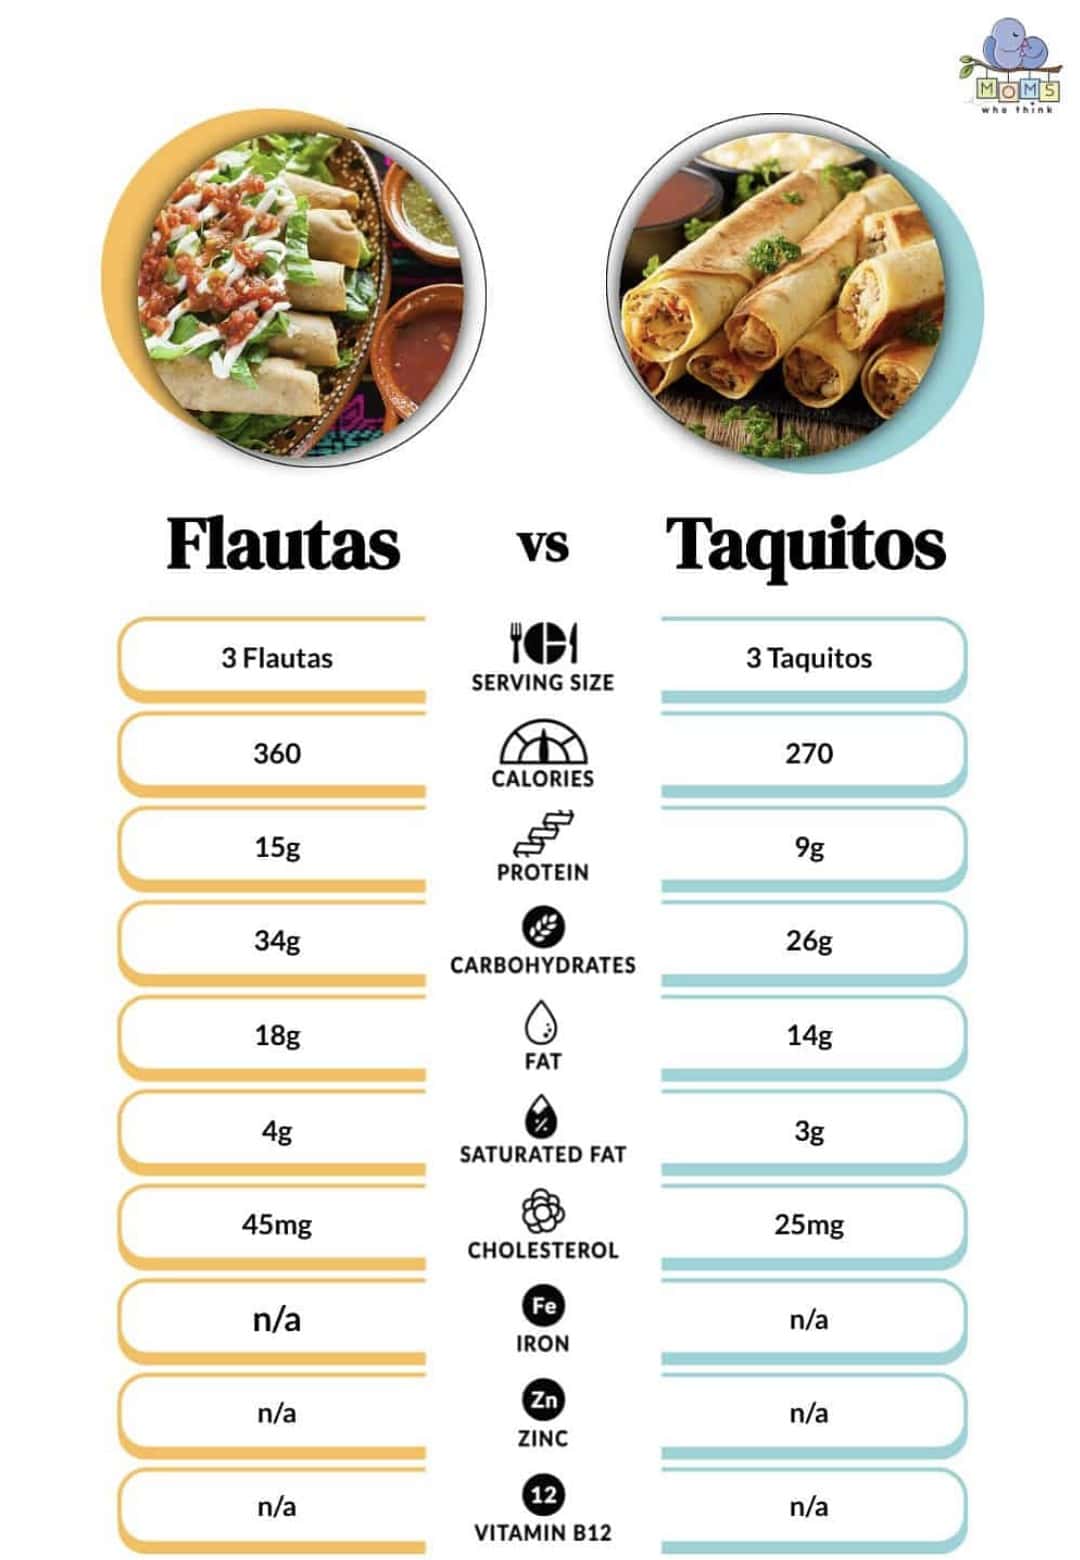 Flautas vs. Taquitos